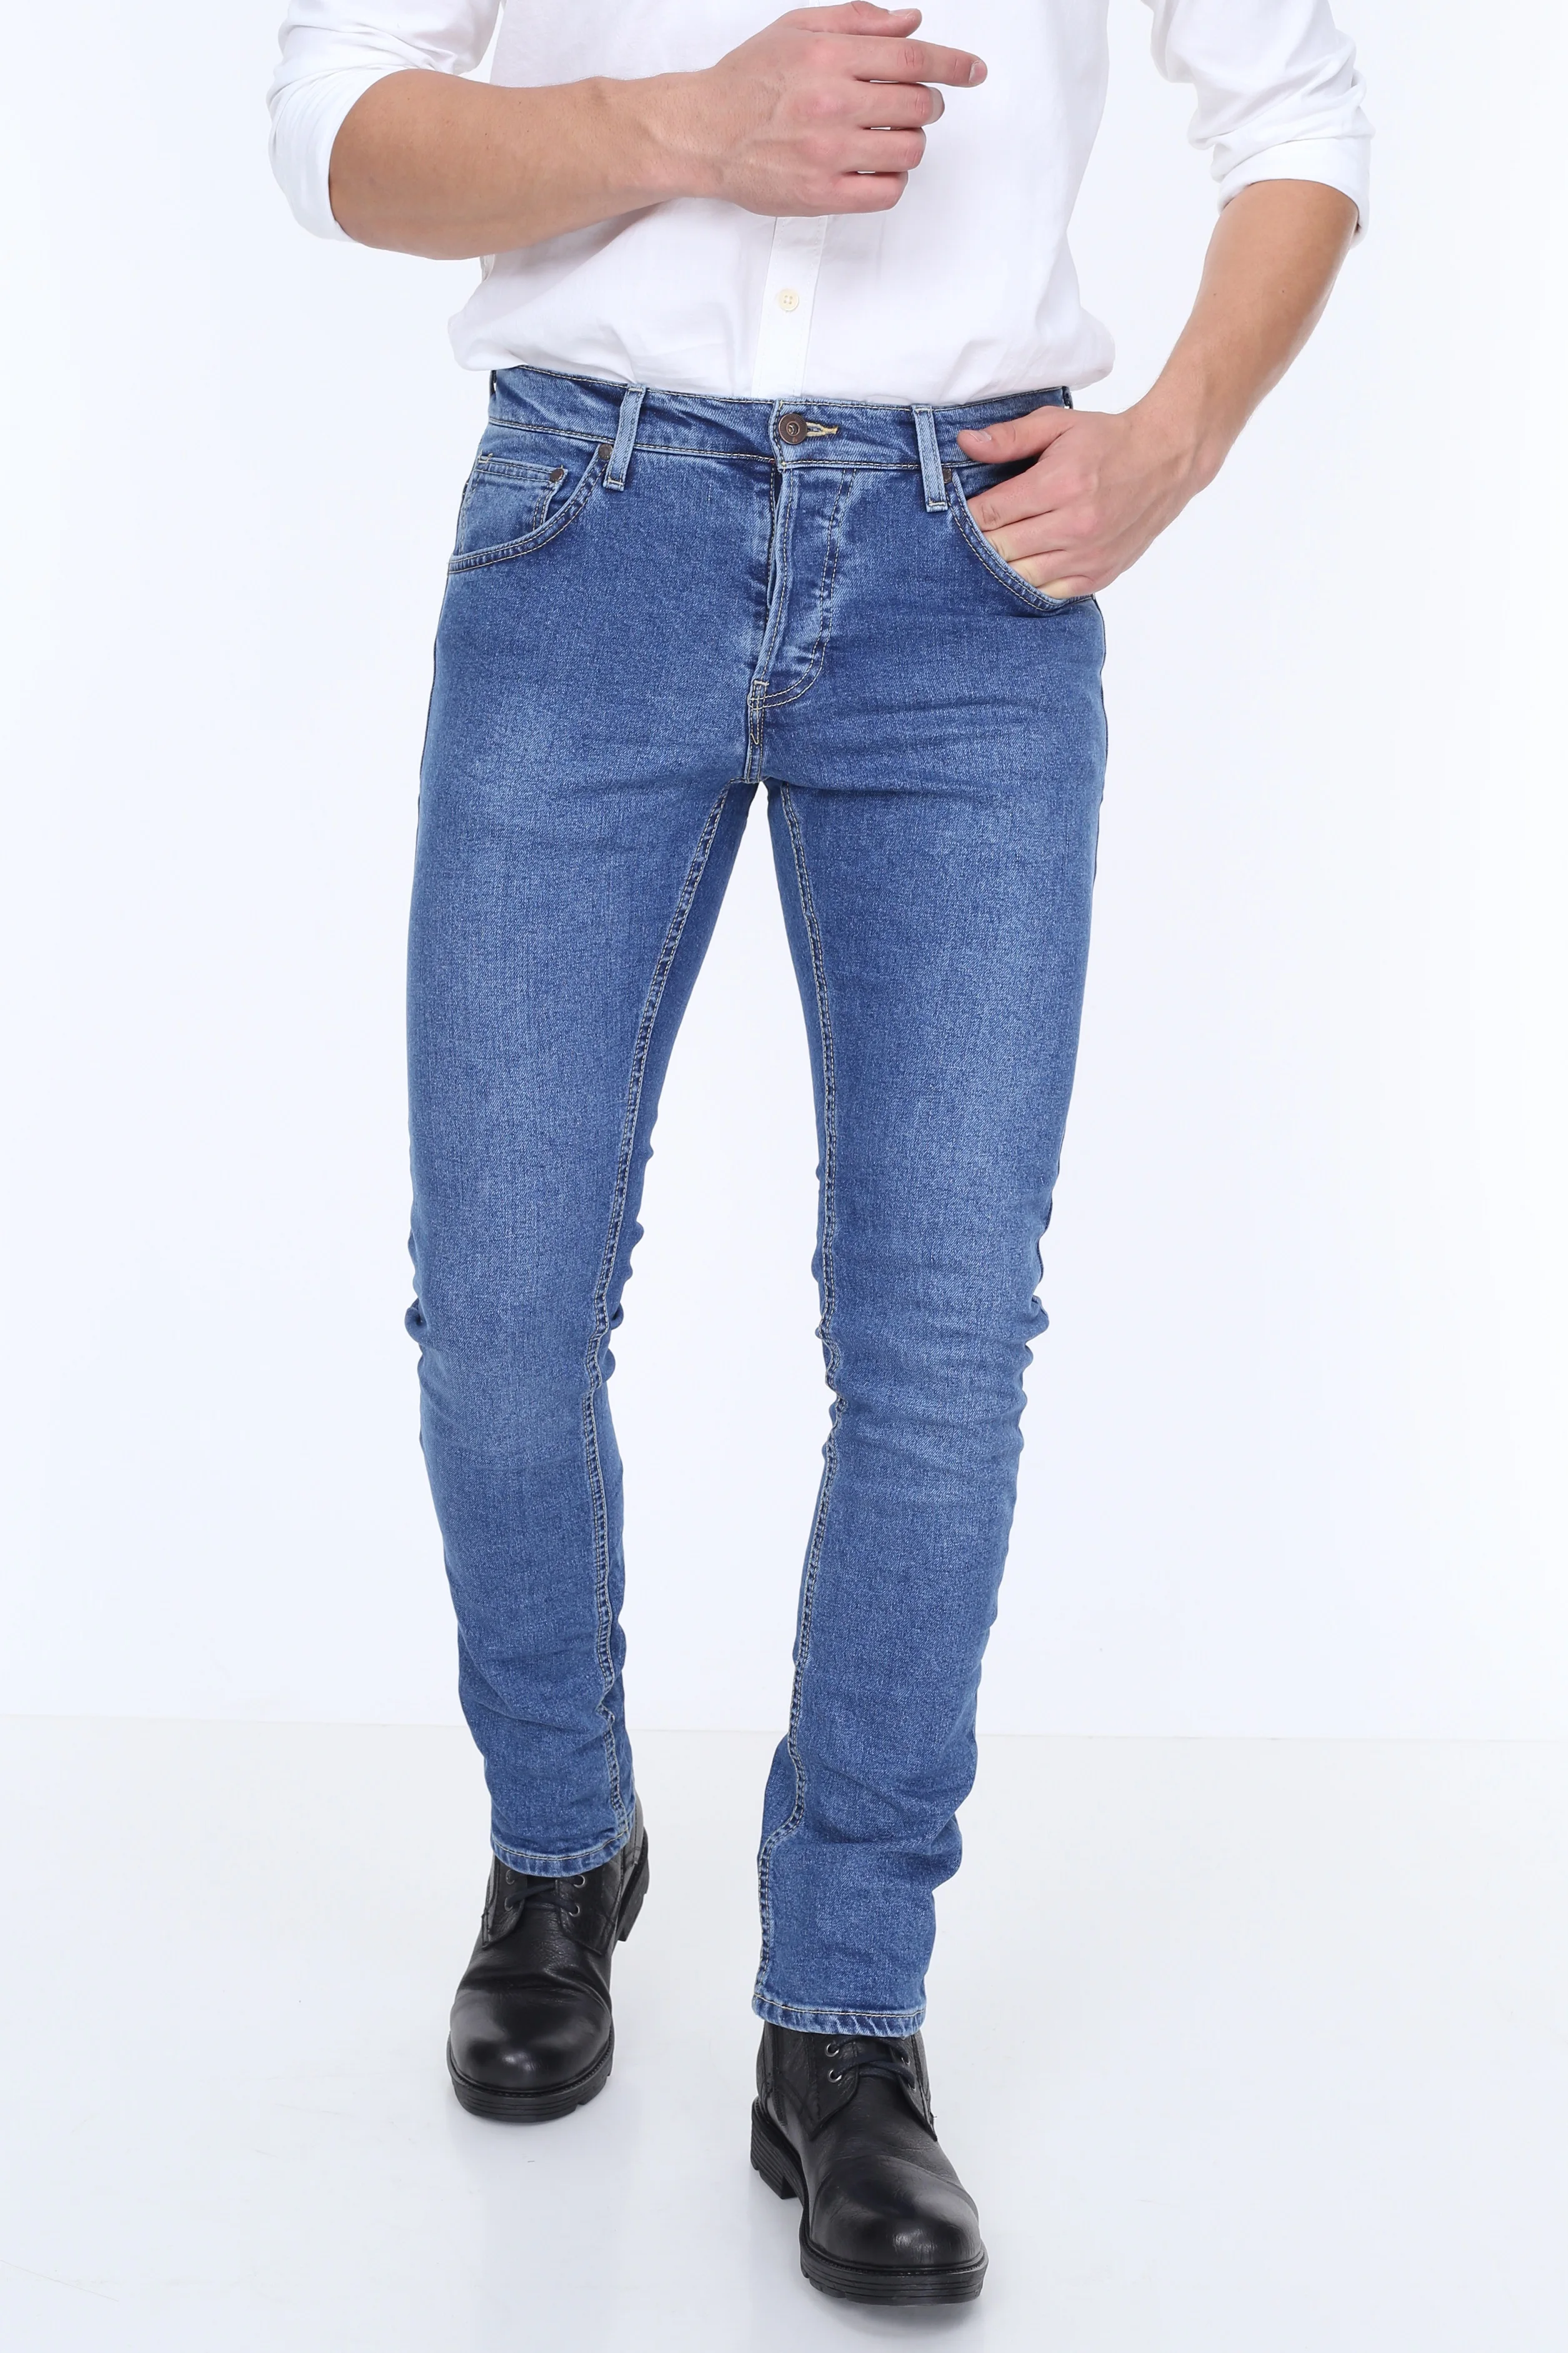 Мужские облегающие джинсы HW 14946 2 стрейч подарок для мужчин комфорт турецкий